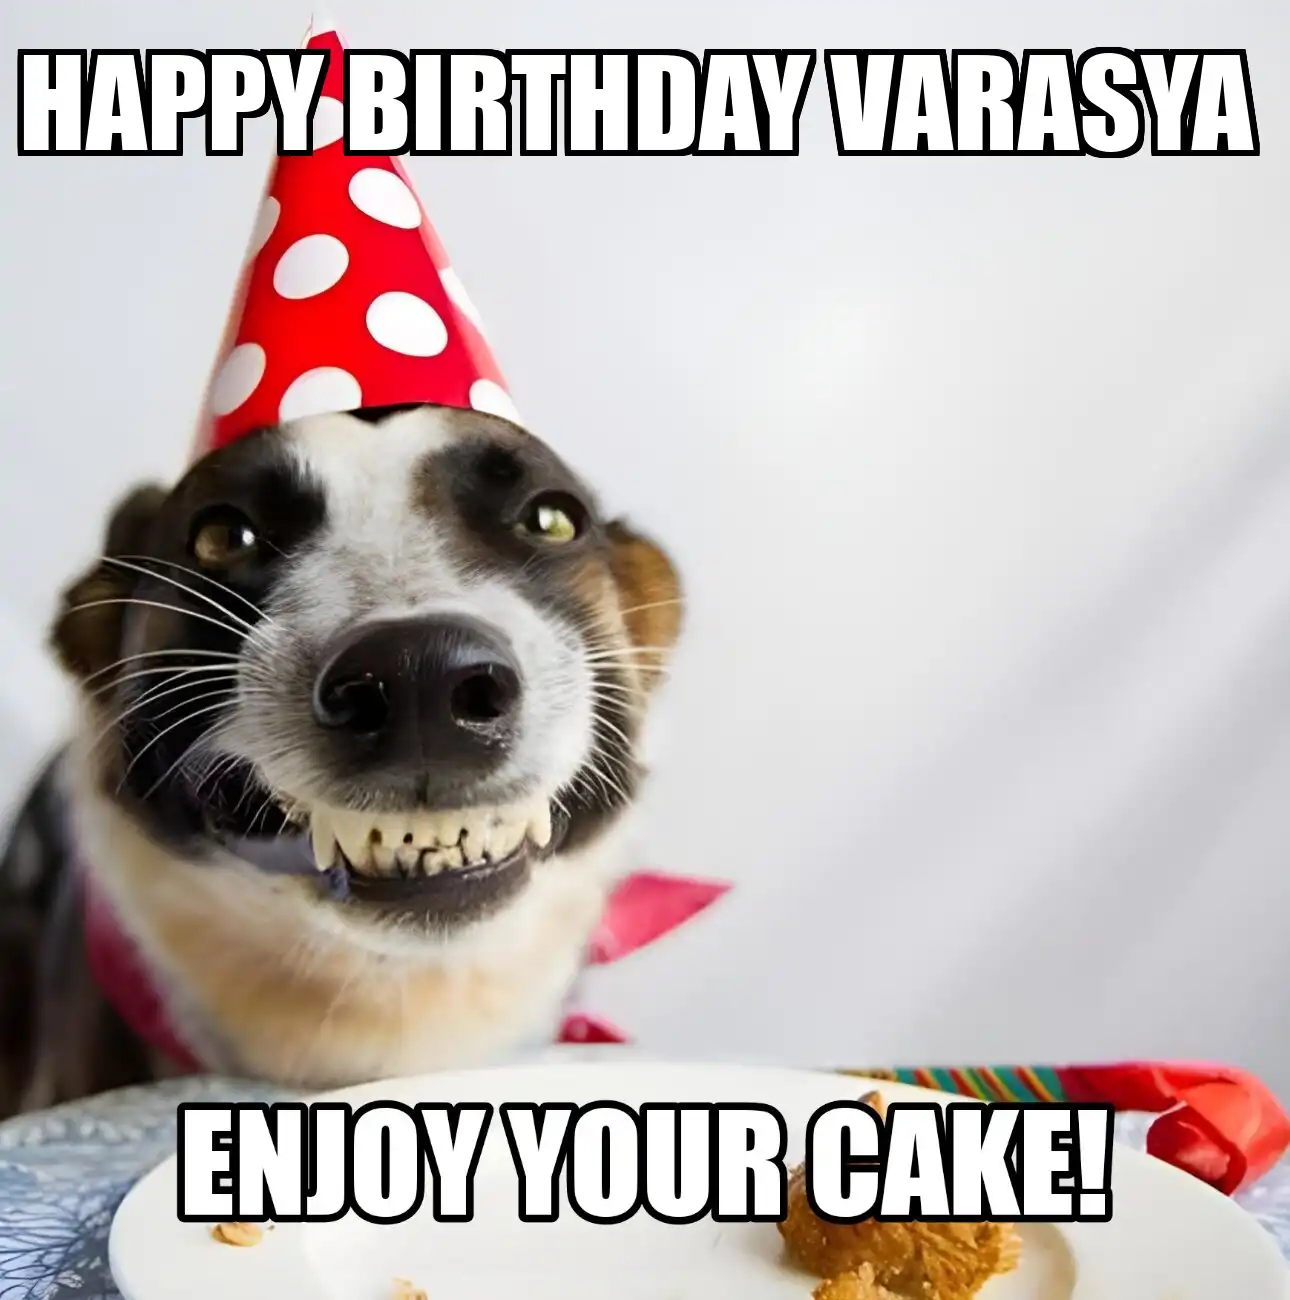 Happy Birthday Varasya Enjoy Your Cake Dog Meme